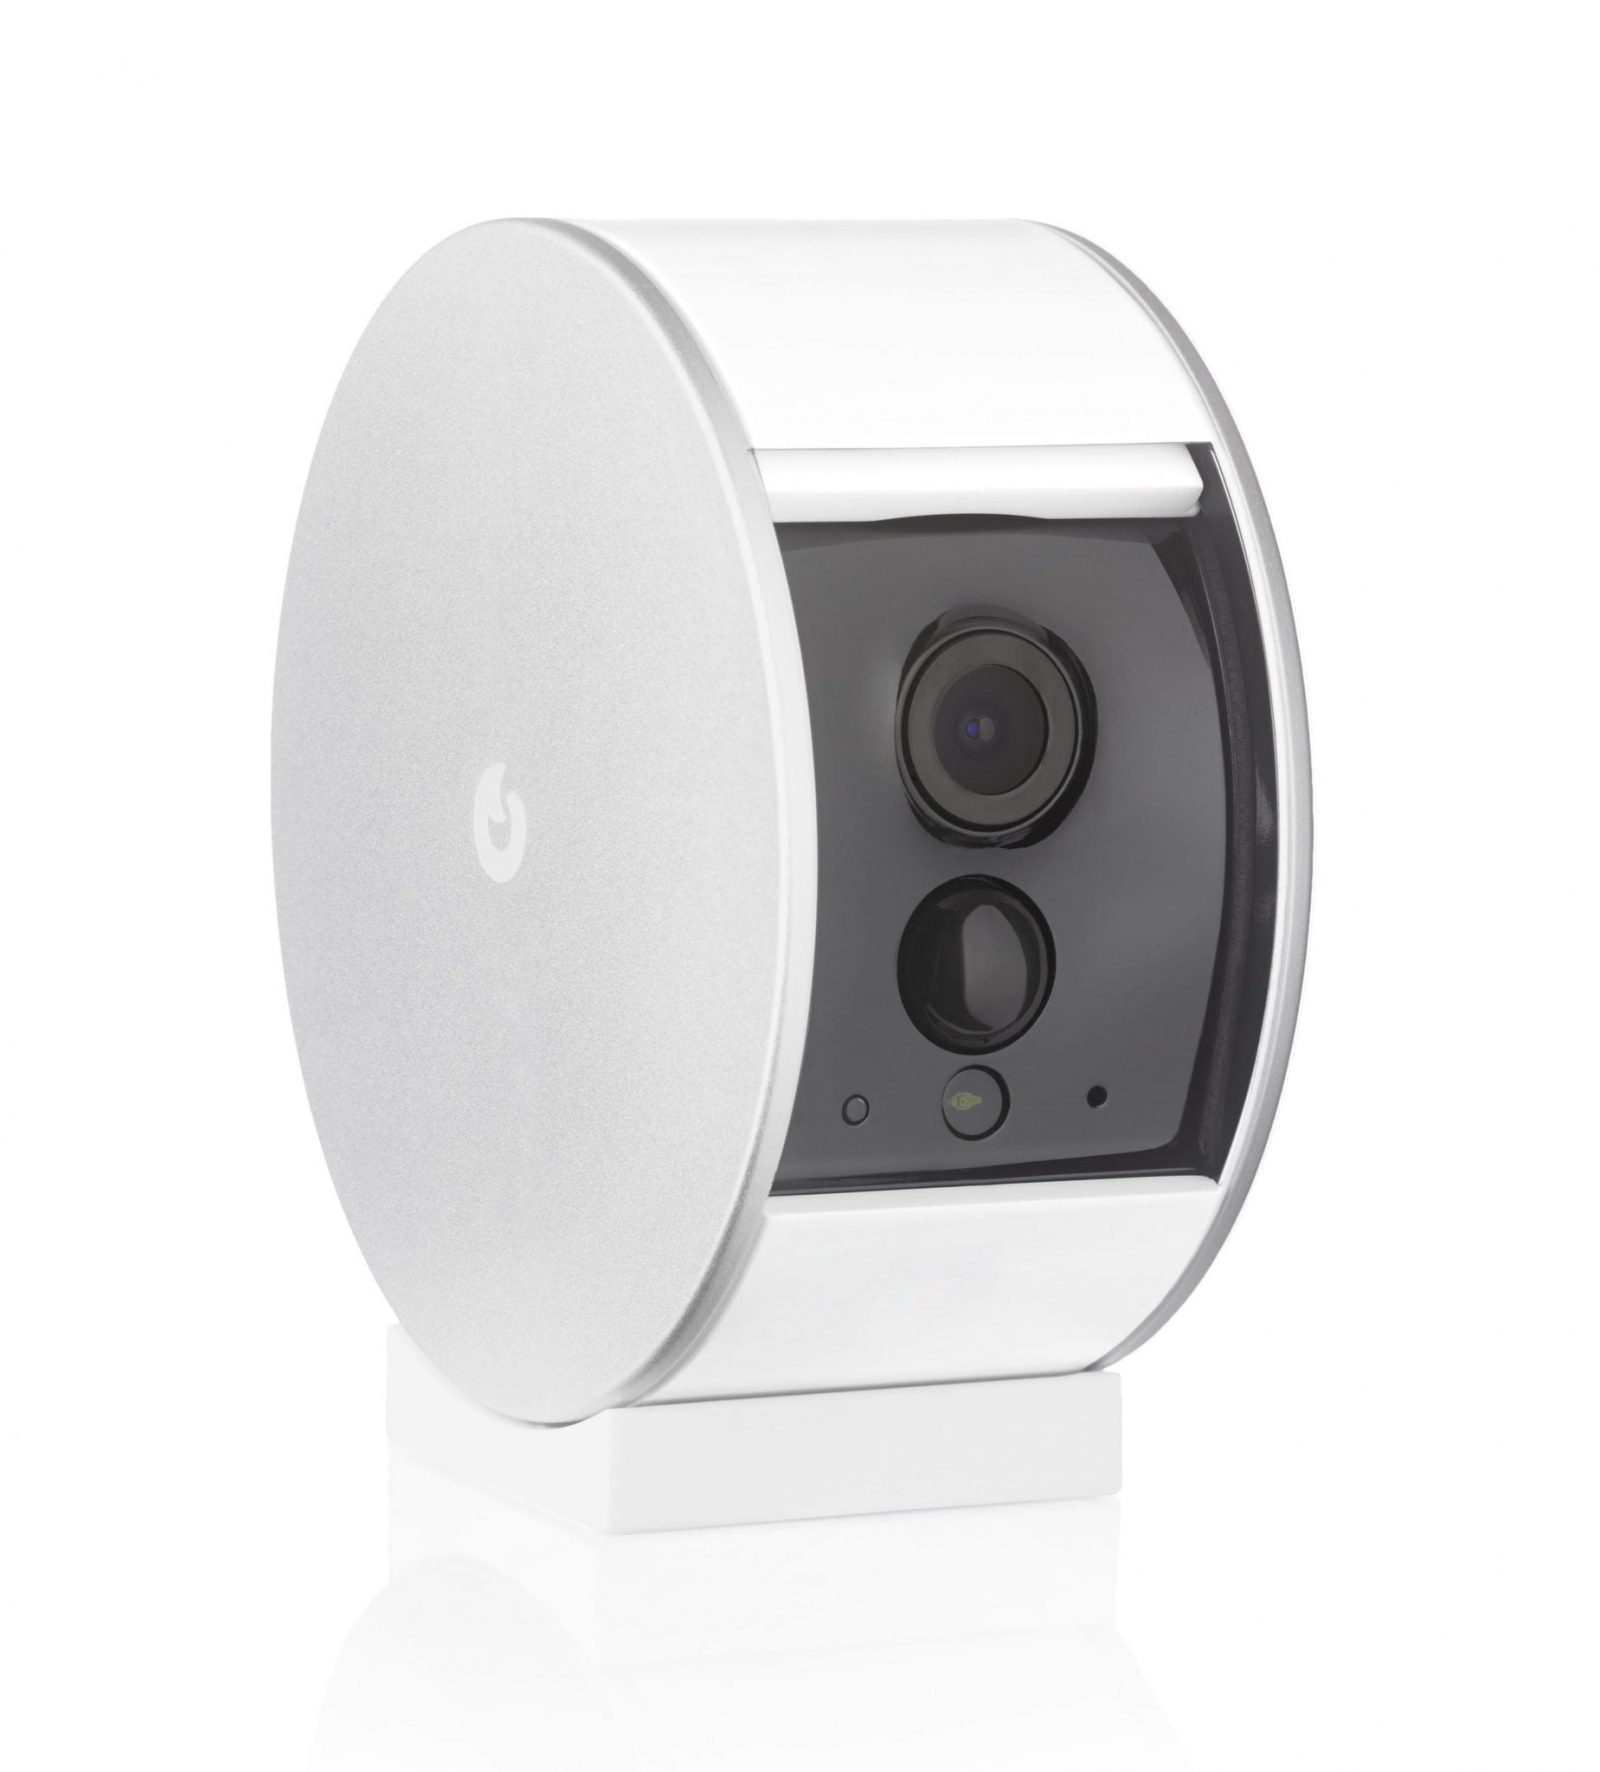 Proteggere la tua casa con Myfox Home Alarm e Security Camera diventa più conveniente, grazie al bonus fiscale 1